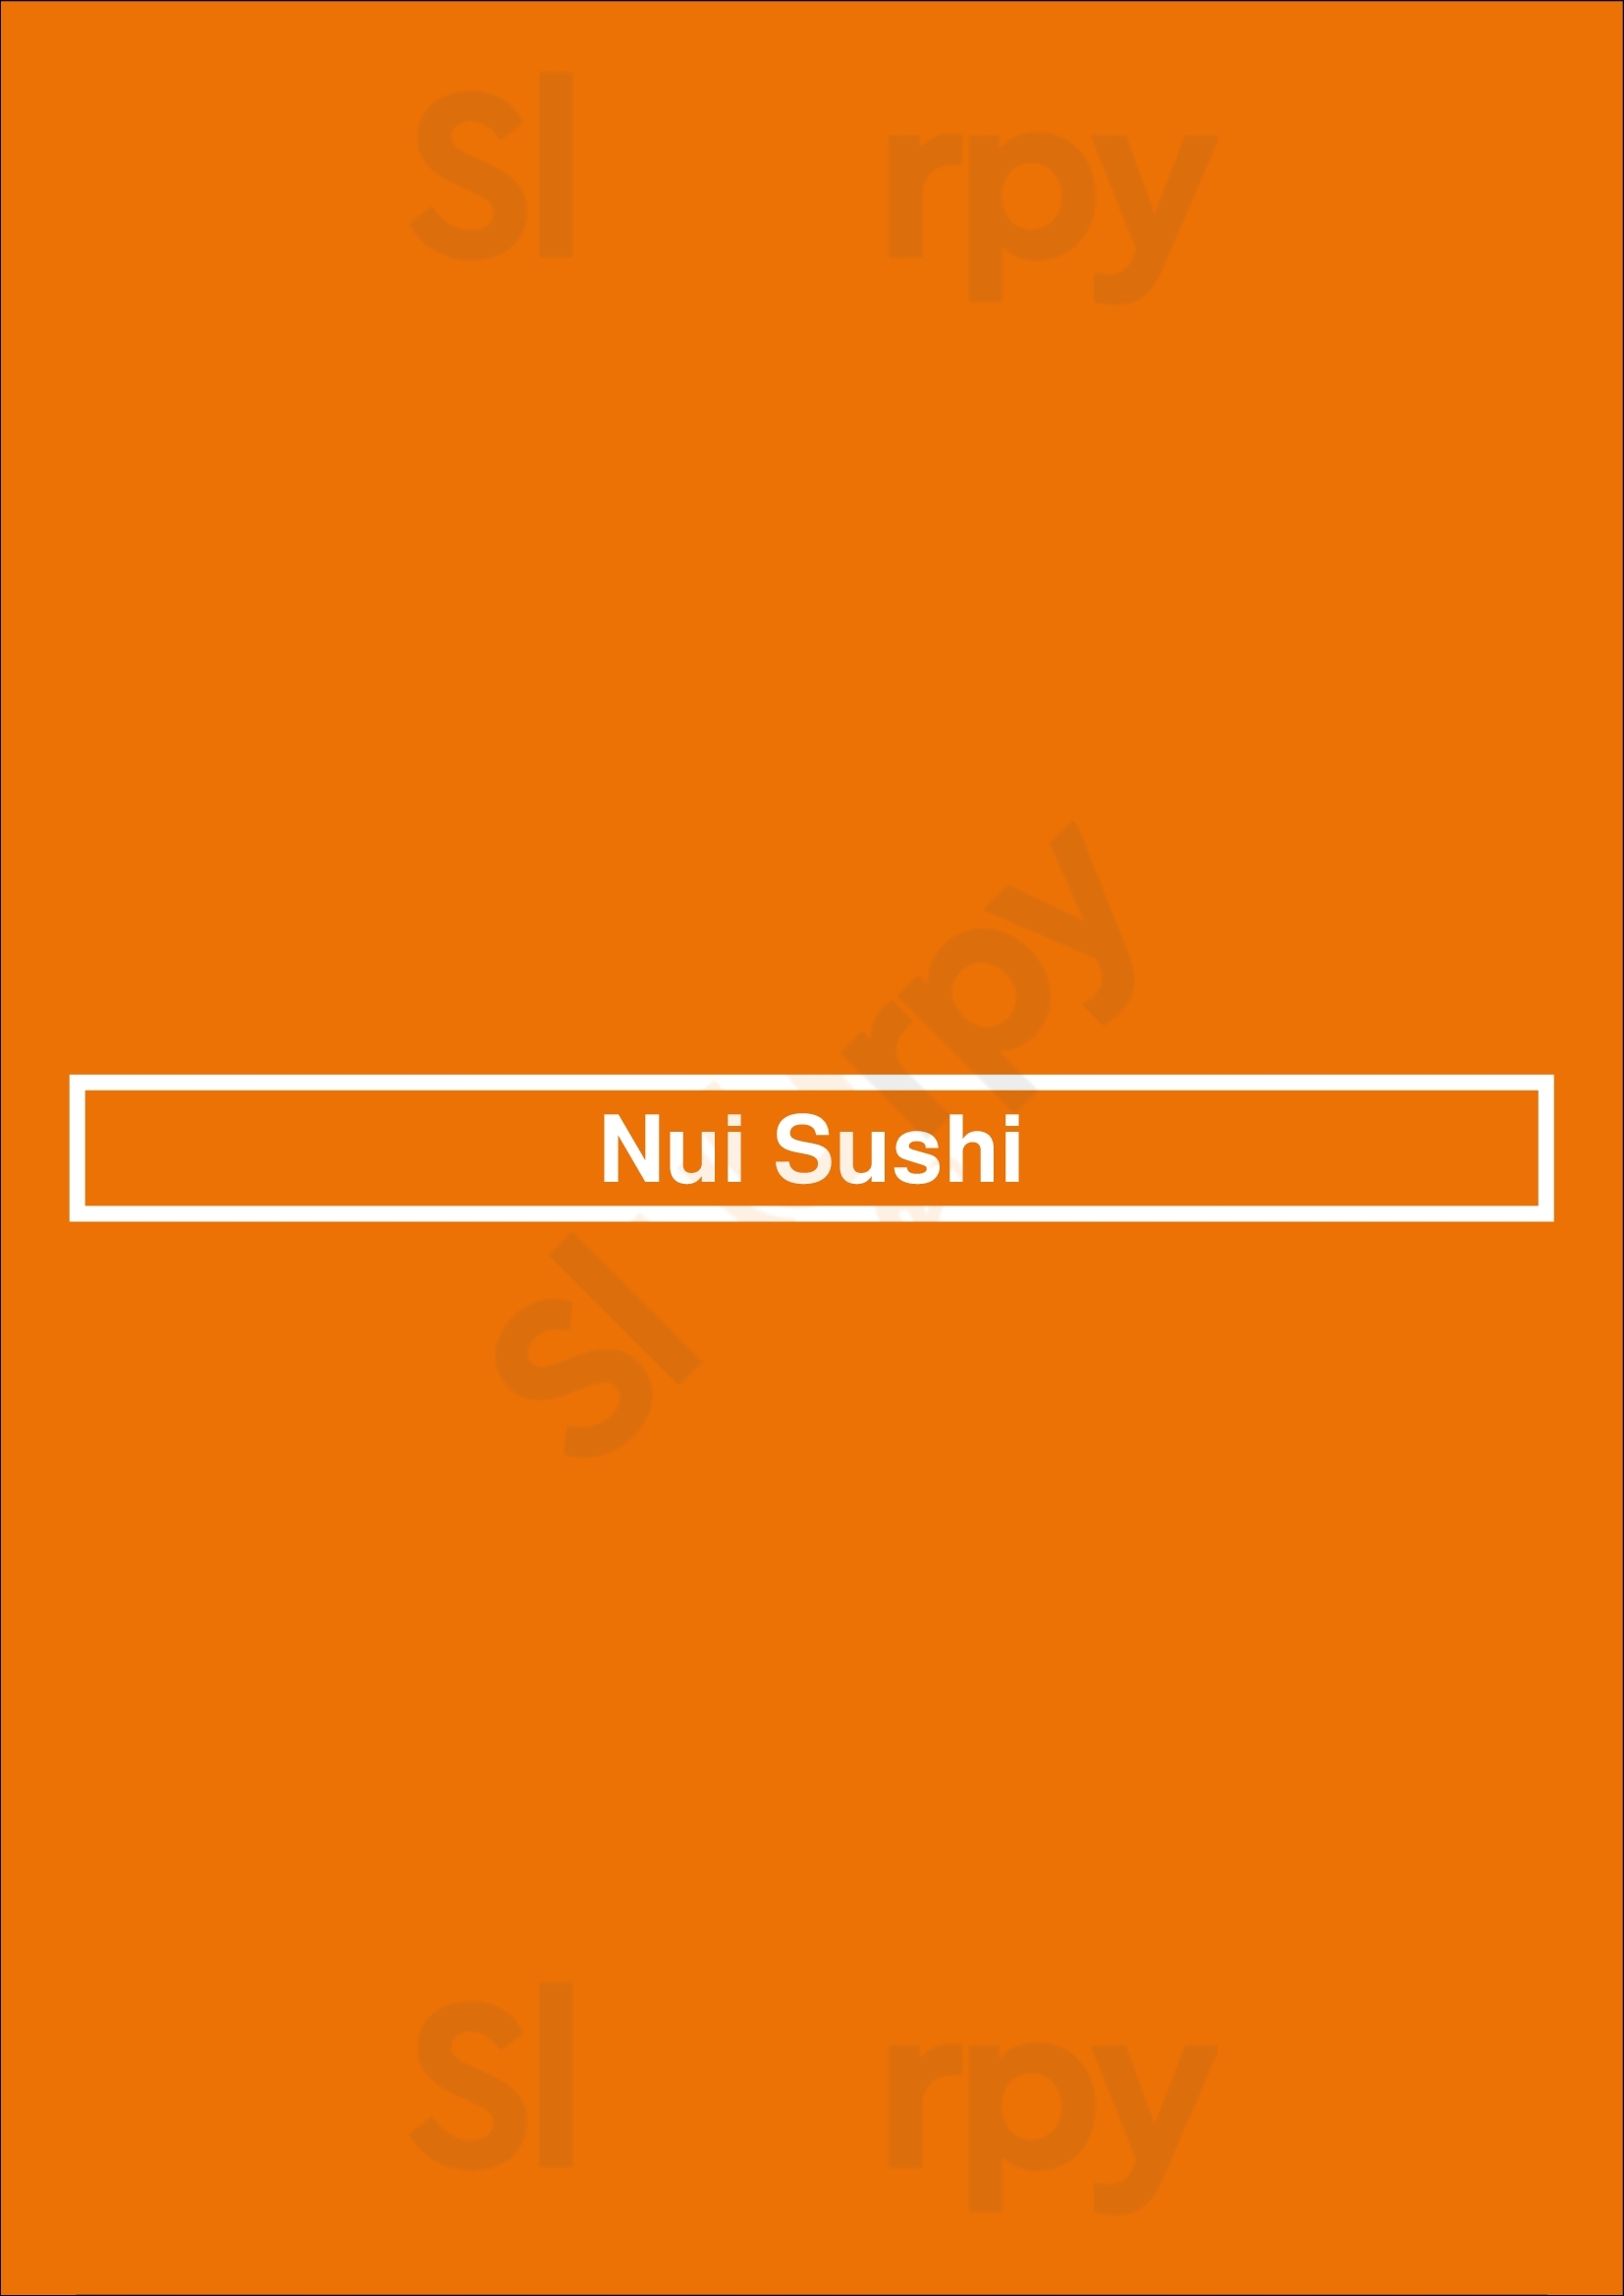 Nui Sushi Lisboa Menu - 1